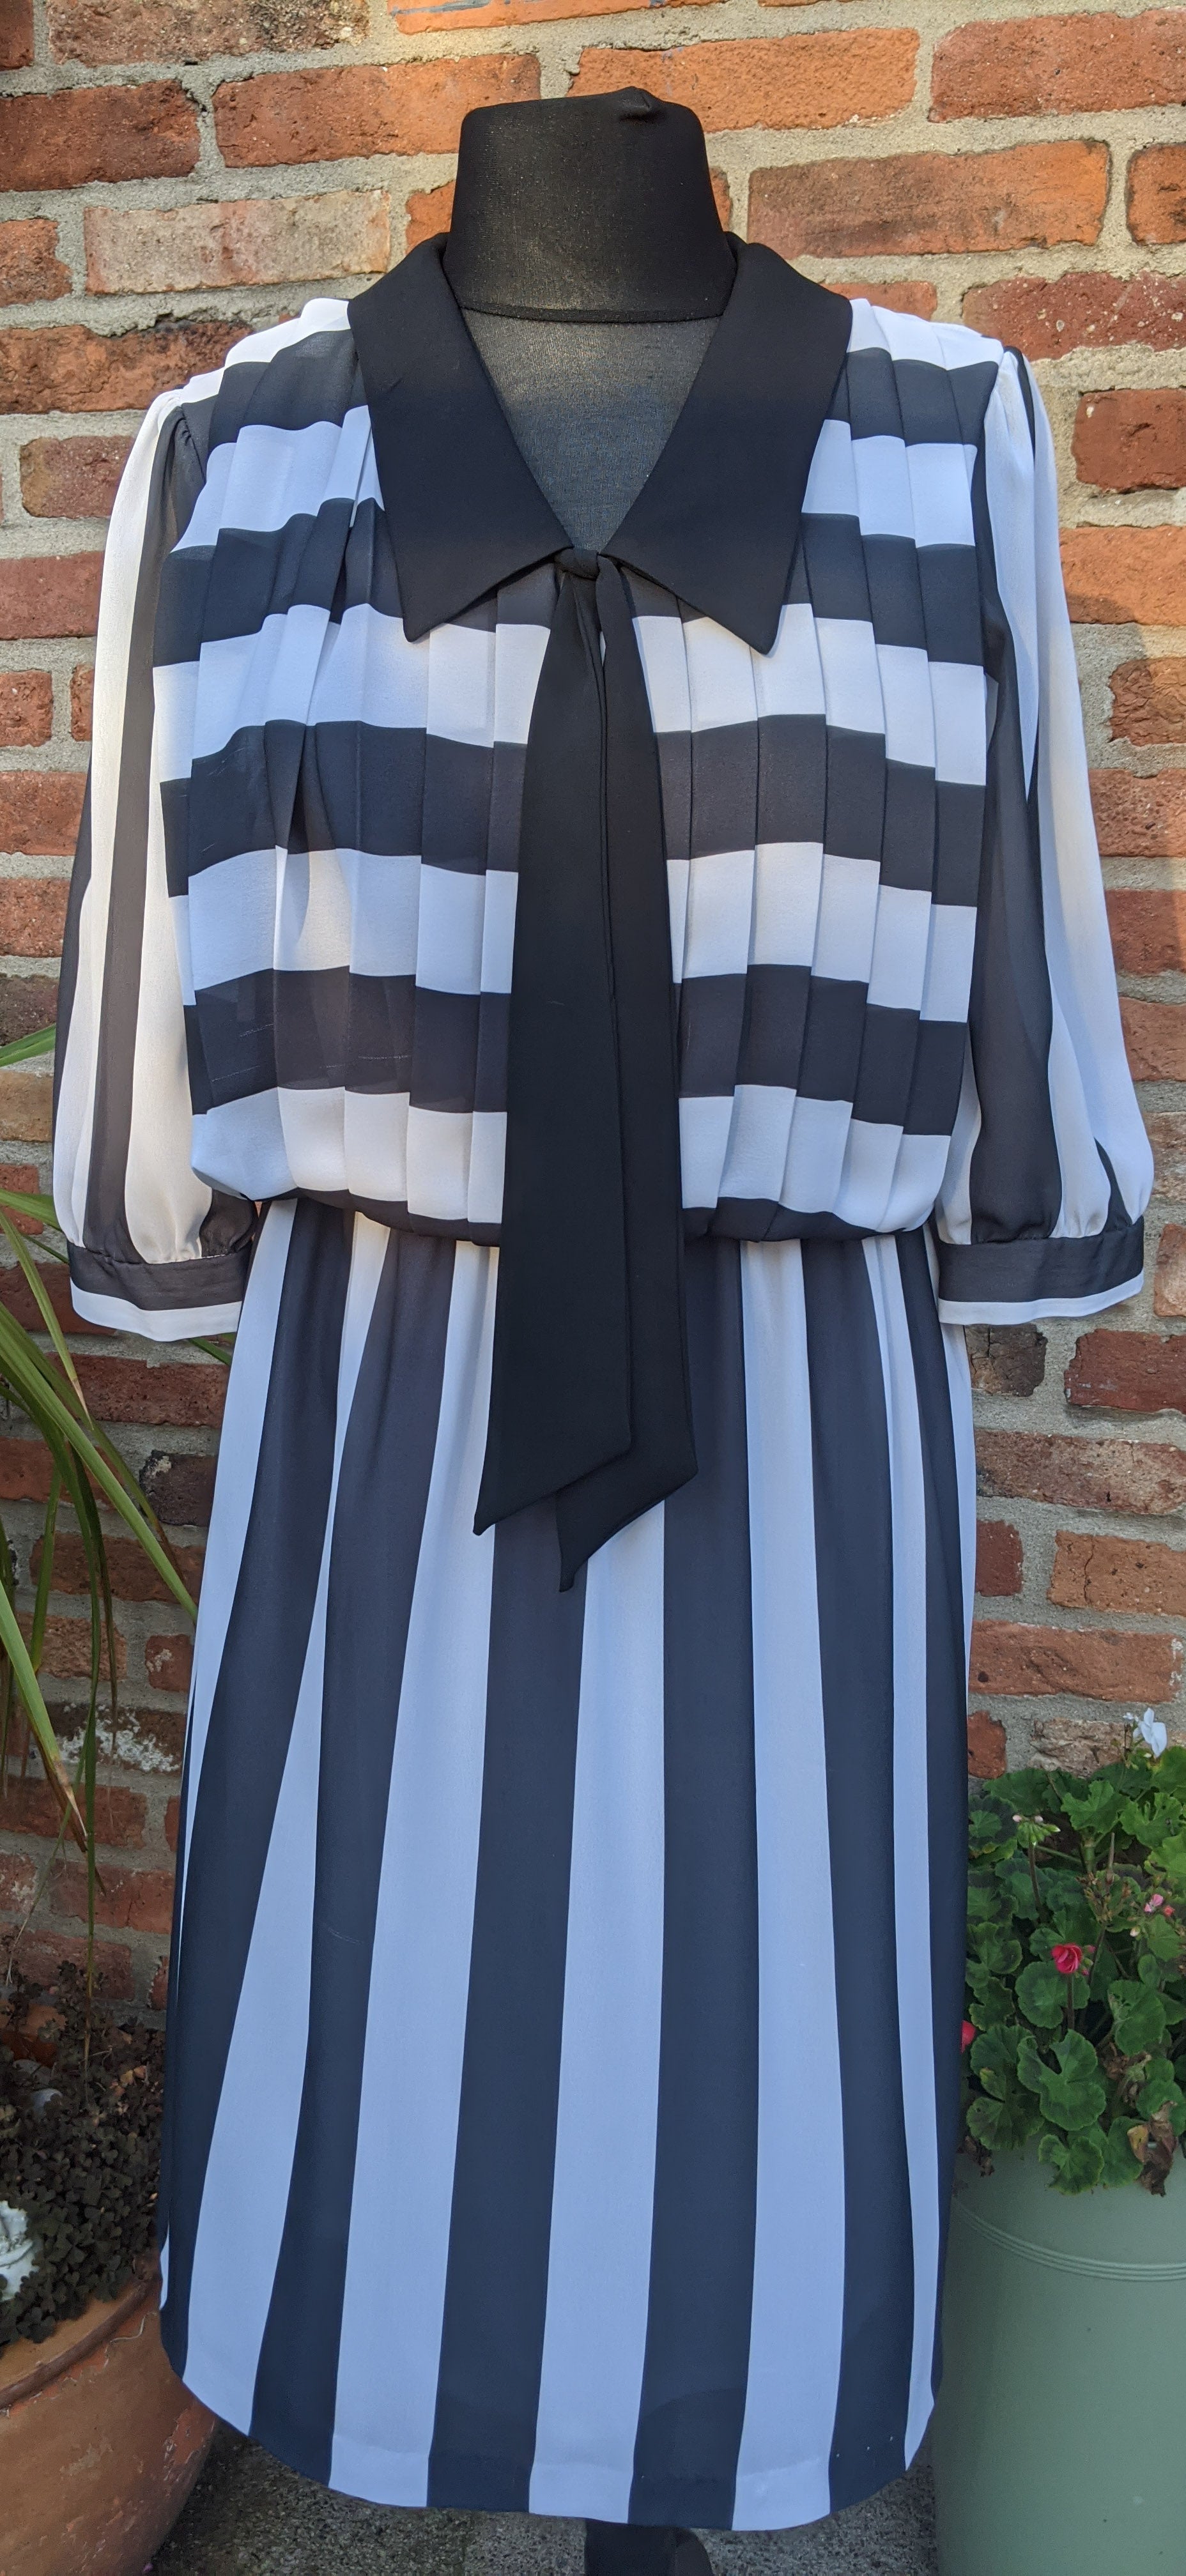 Poly chiffon black & white midi dress size 12/14 item816